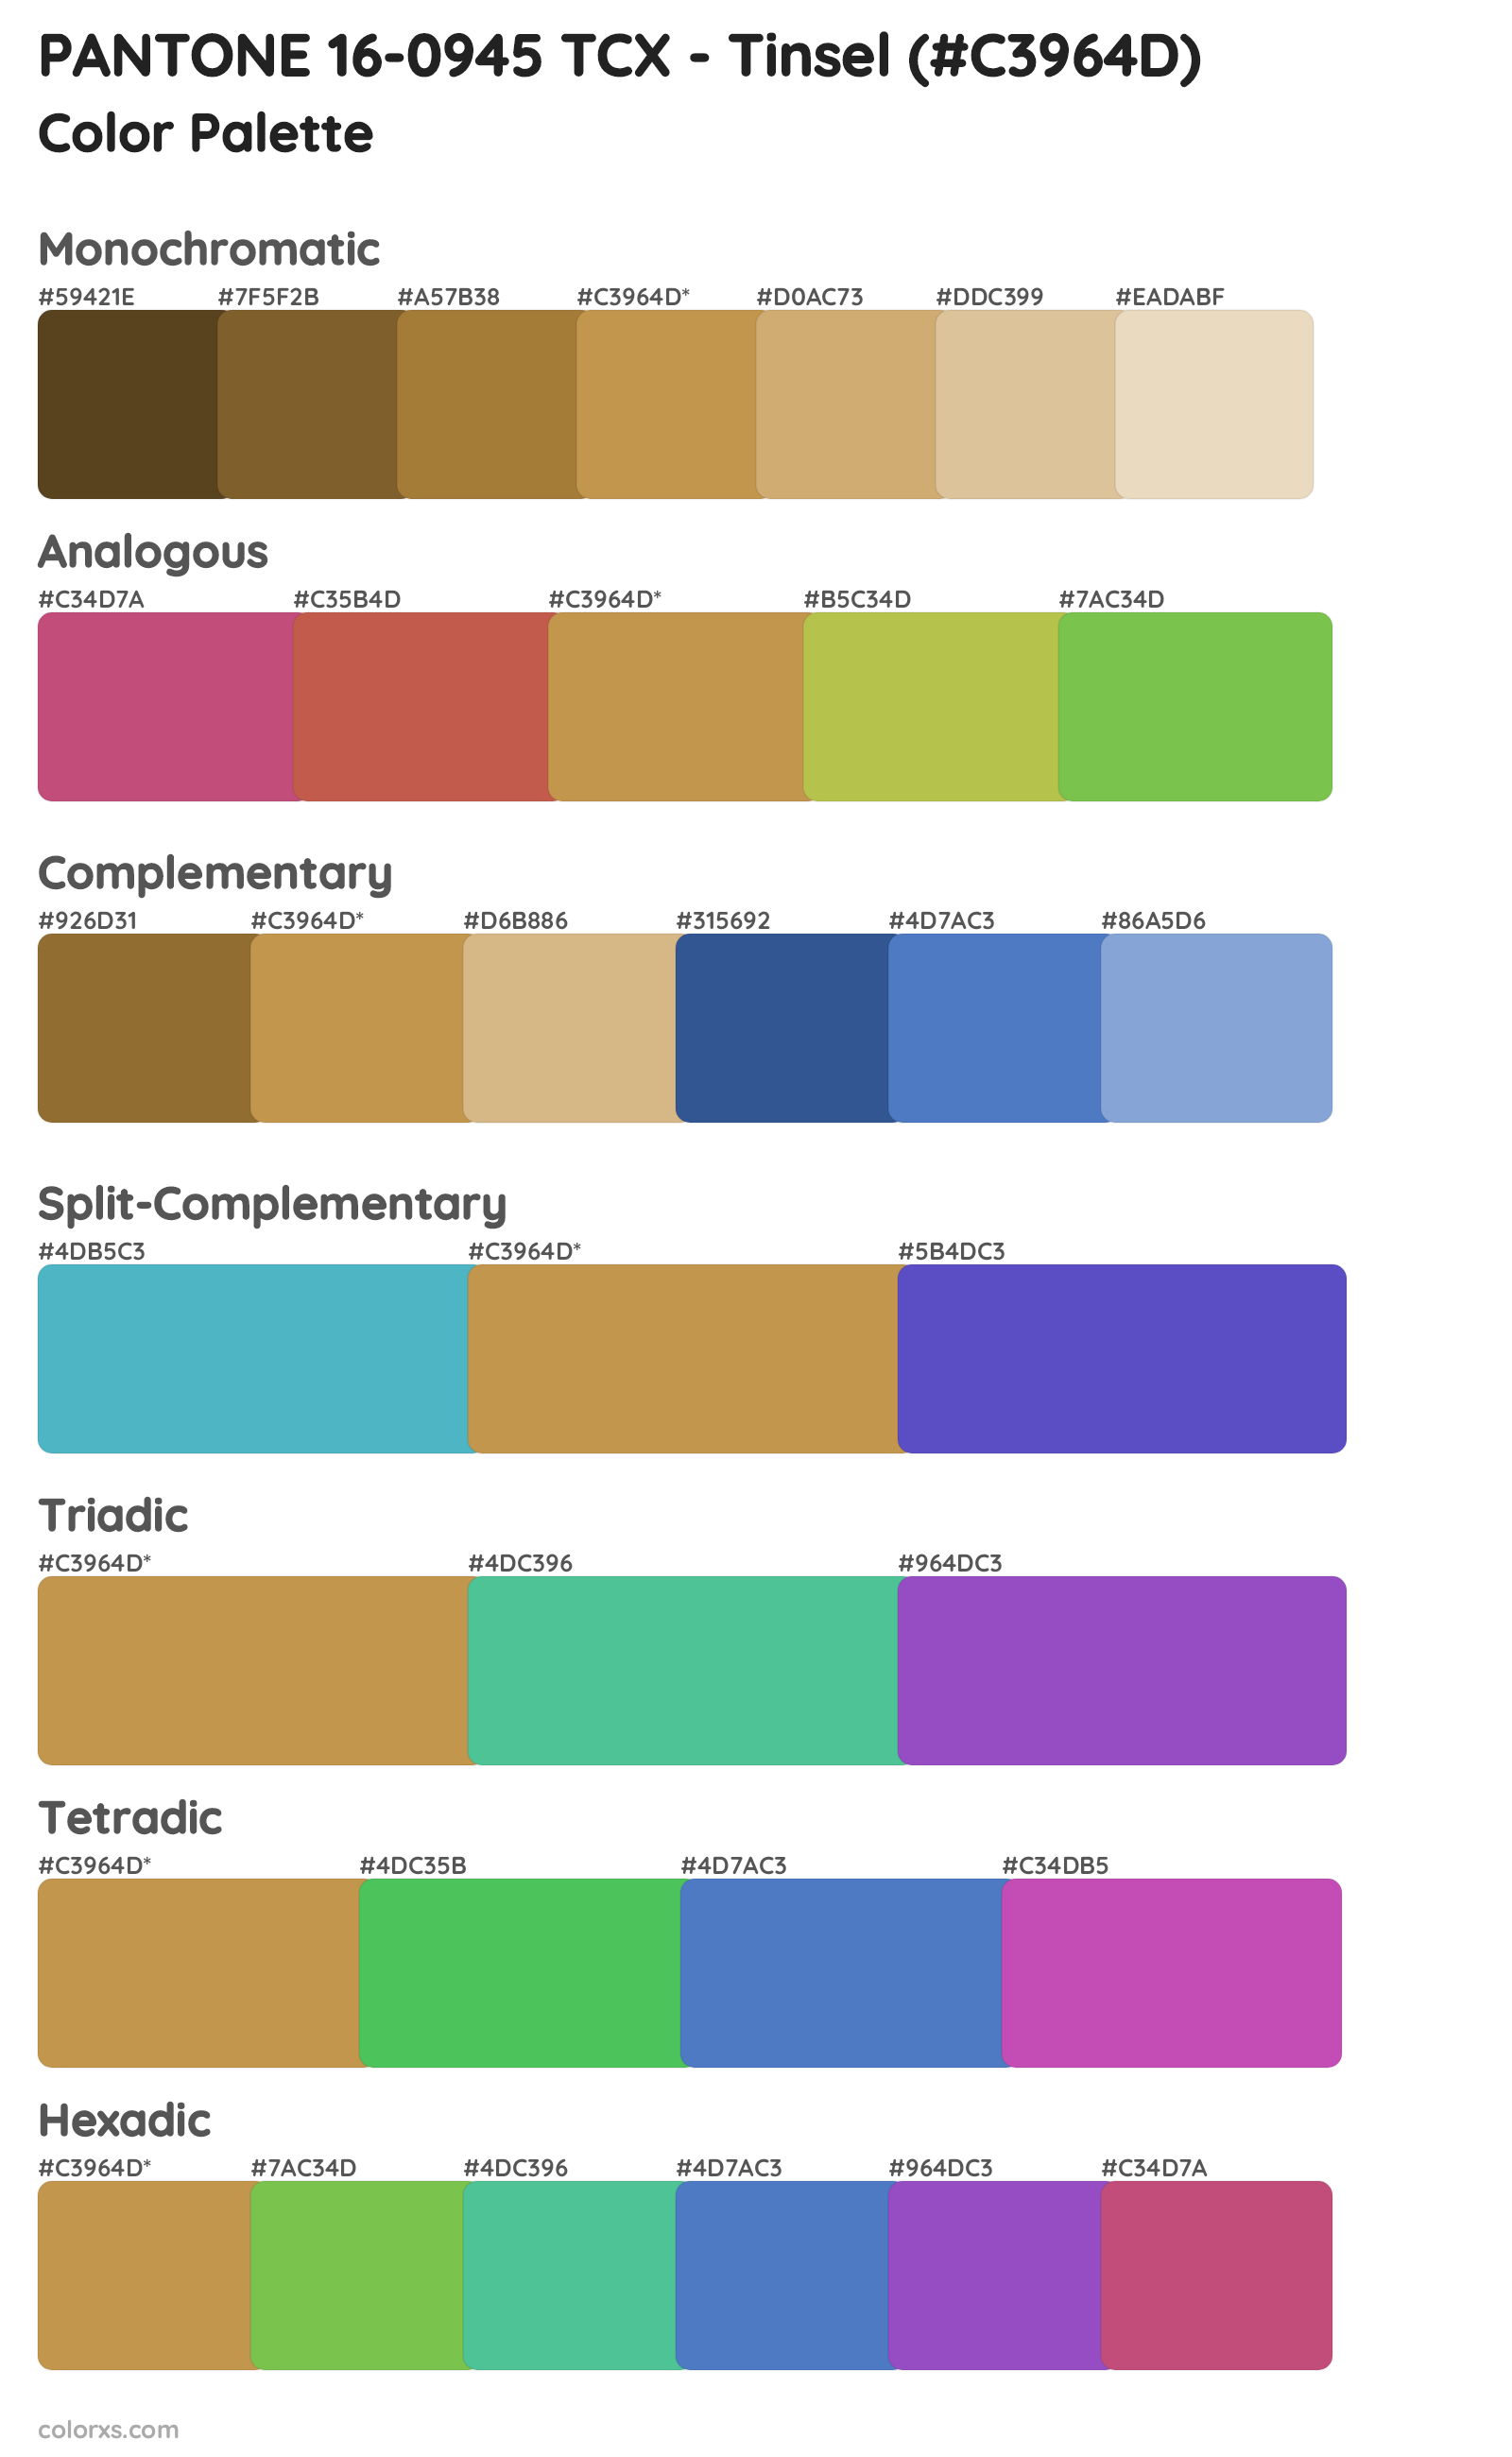 PANTONE 16-0945 TCX - Tinsel Color Scheme Palettes